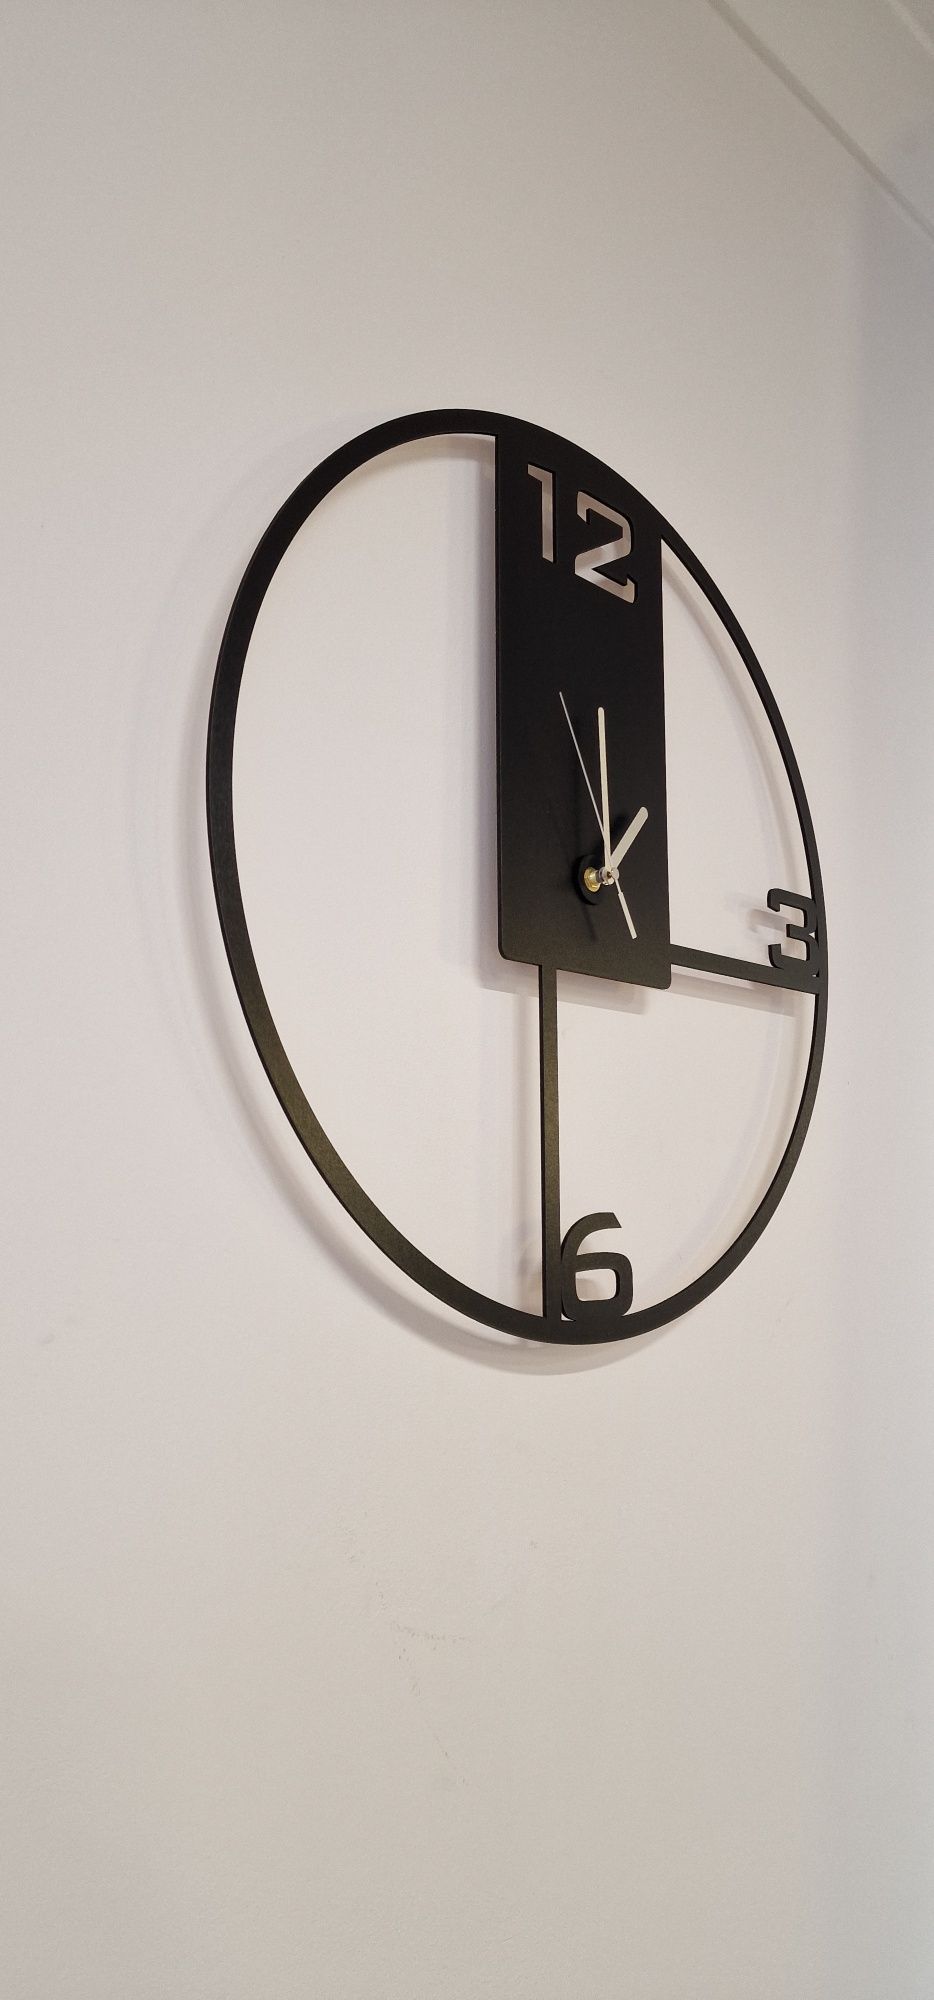 Zegar ścienny,nowoczesny zegar, zegar, duży zegar 70, wysyłka GRATIS!